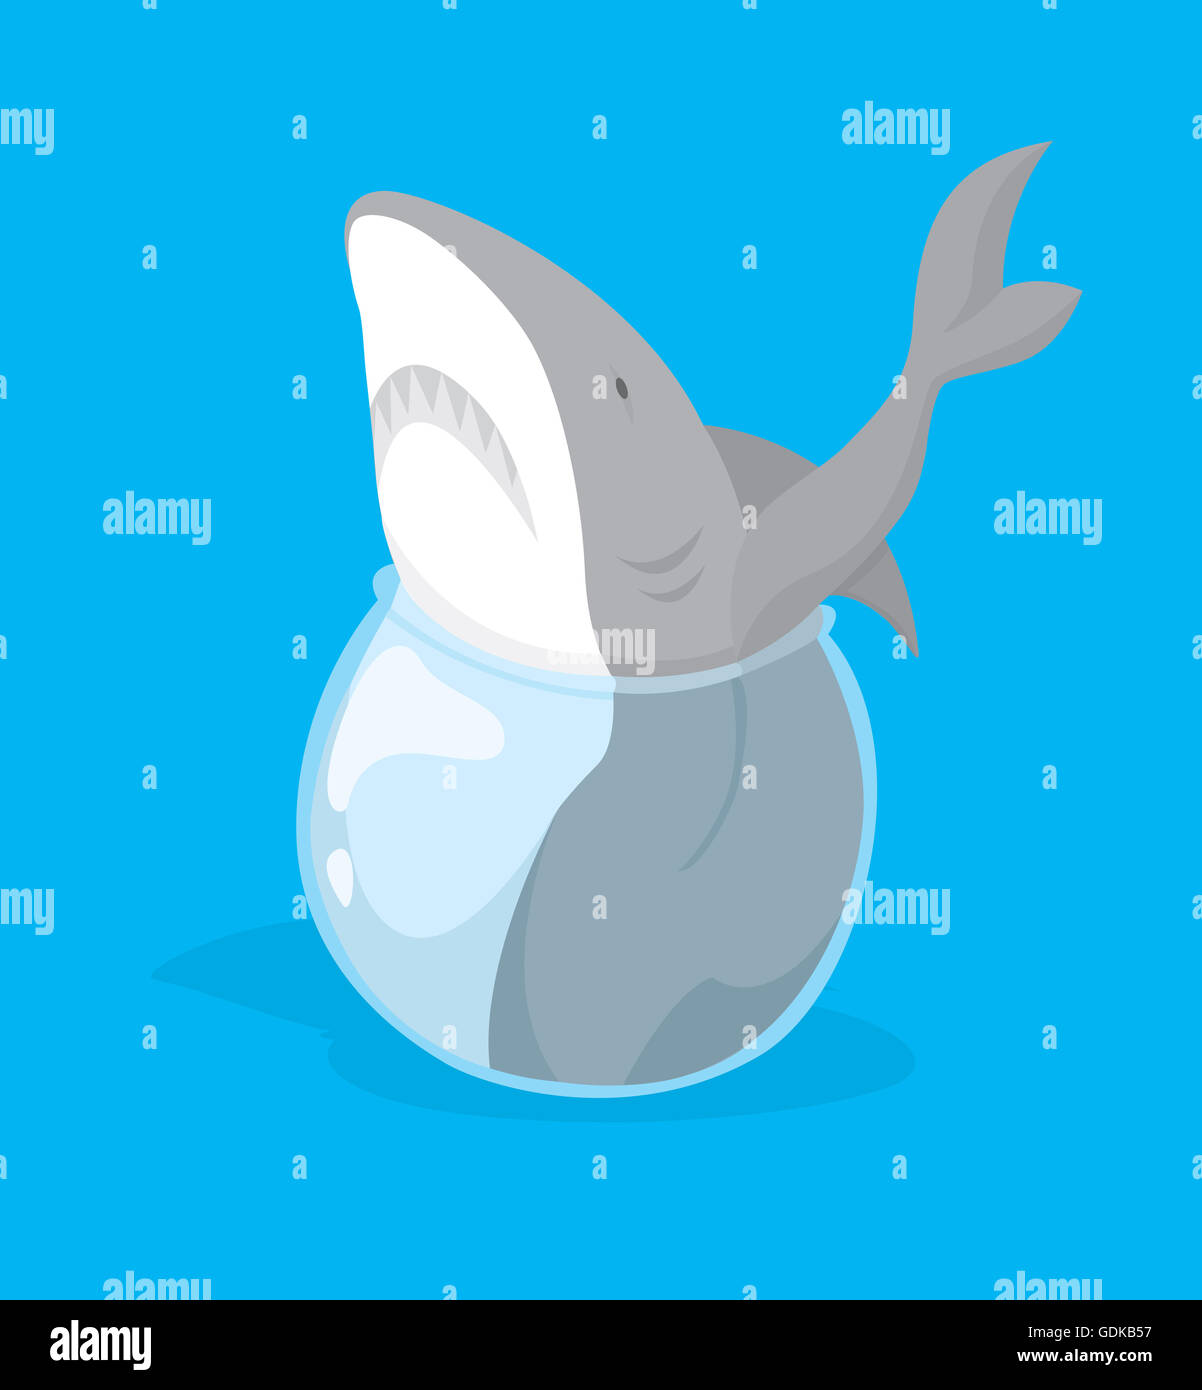 Lustige Cartoon Illustration der großen Fische oder Hai stecken in kleinen Goldfischglas Stockfoto